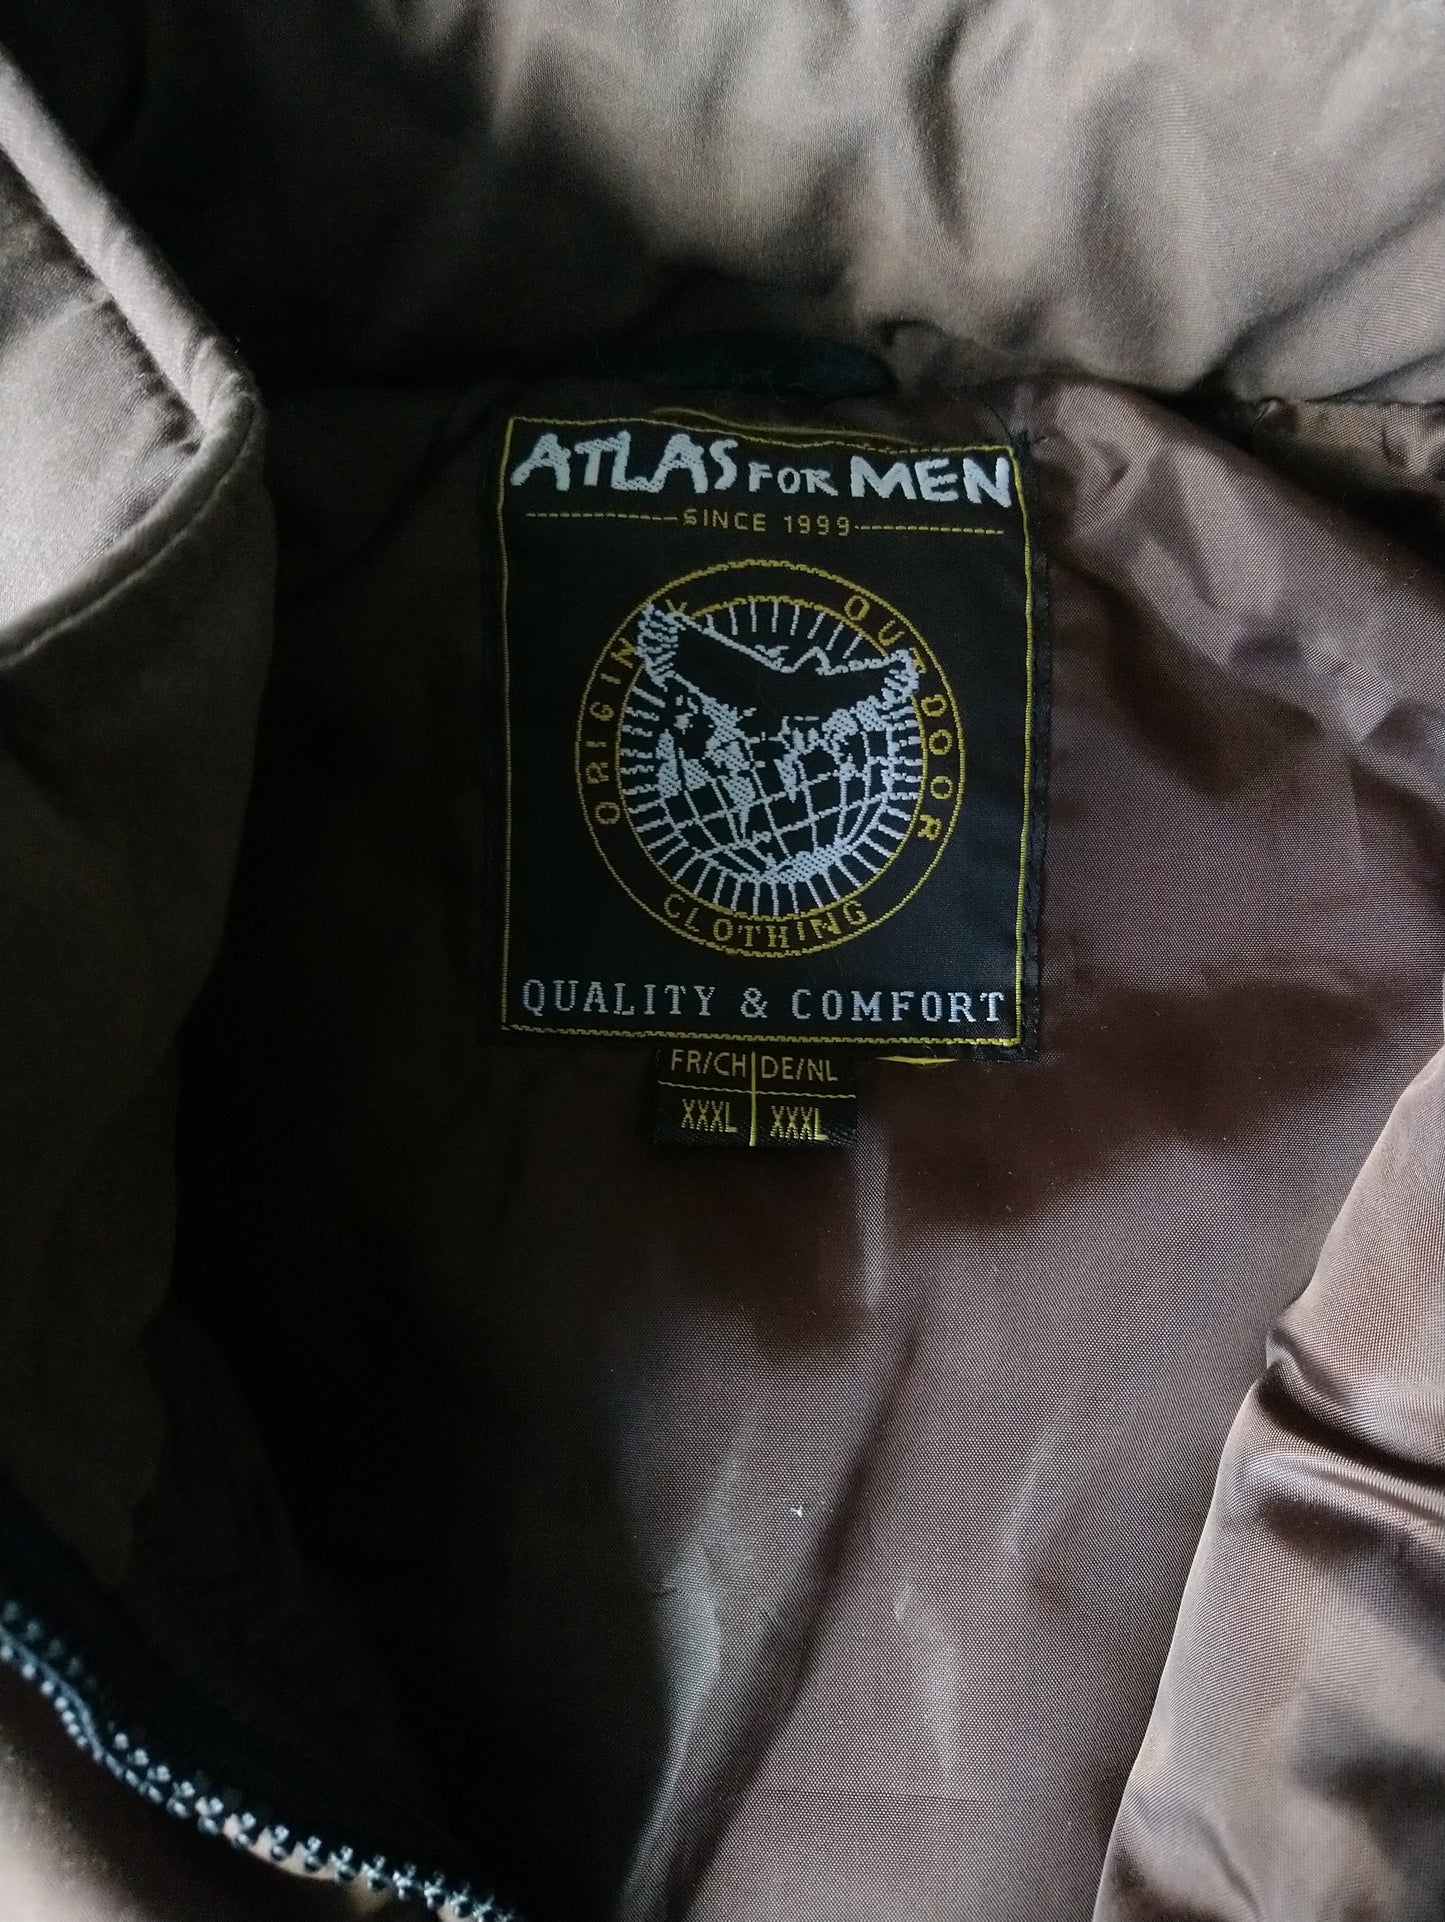 Atlas for Men Bodywarmer. | Colore nero marrone. Dimensione 3xl / xxxl.